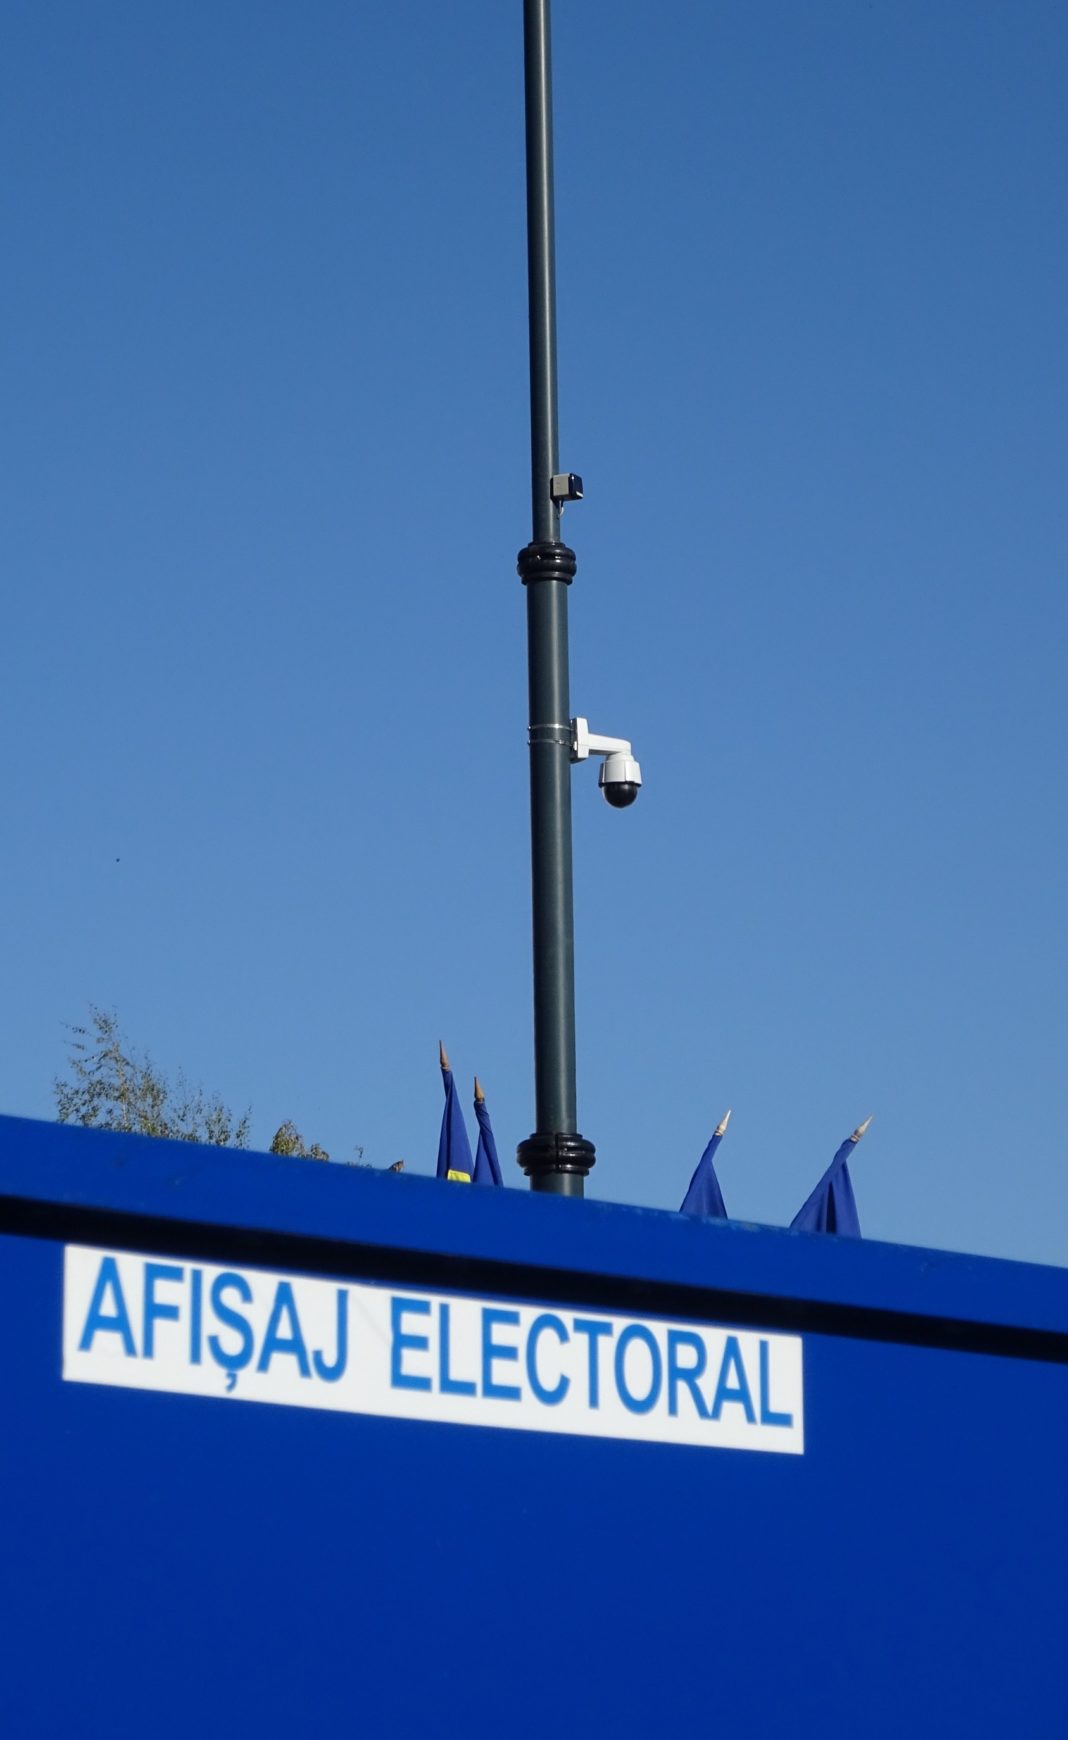 Începe campania electorală pentru alegerile locale. În Râmnicu Vâlcea au fost stabilite 33 de locuri speciale pentru afişajul electoral